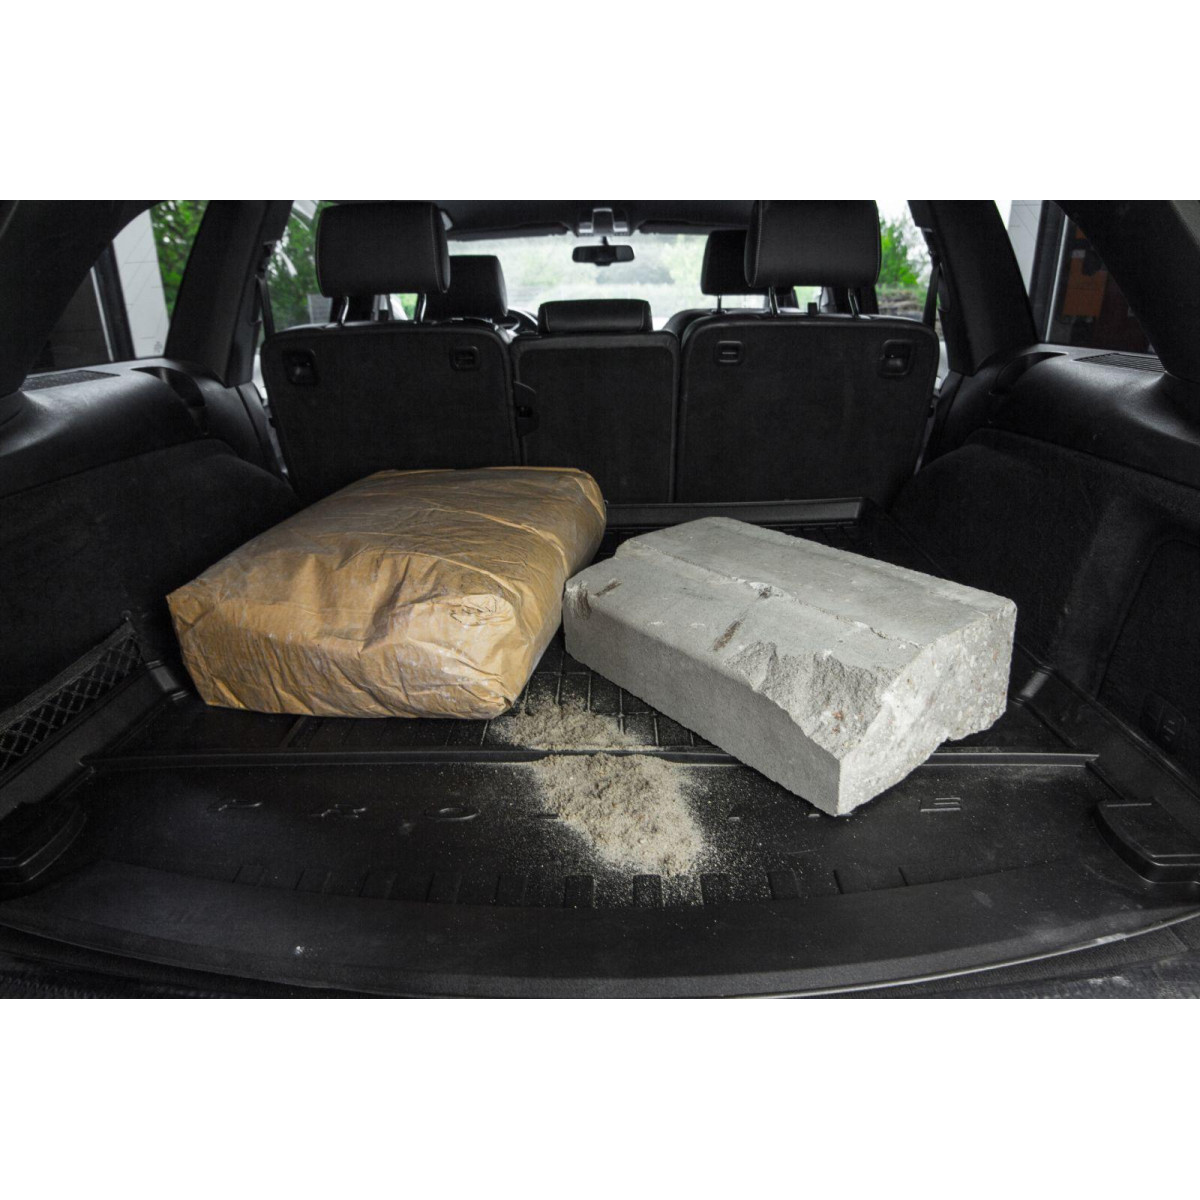 Guminis bagažinės kilimėlis Proline Skoda Fabia II Hatchback 2007-2014m. / paaukštintais kraštais